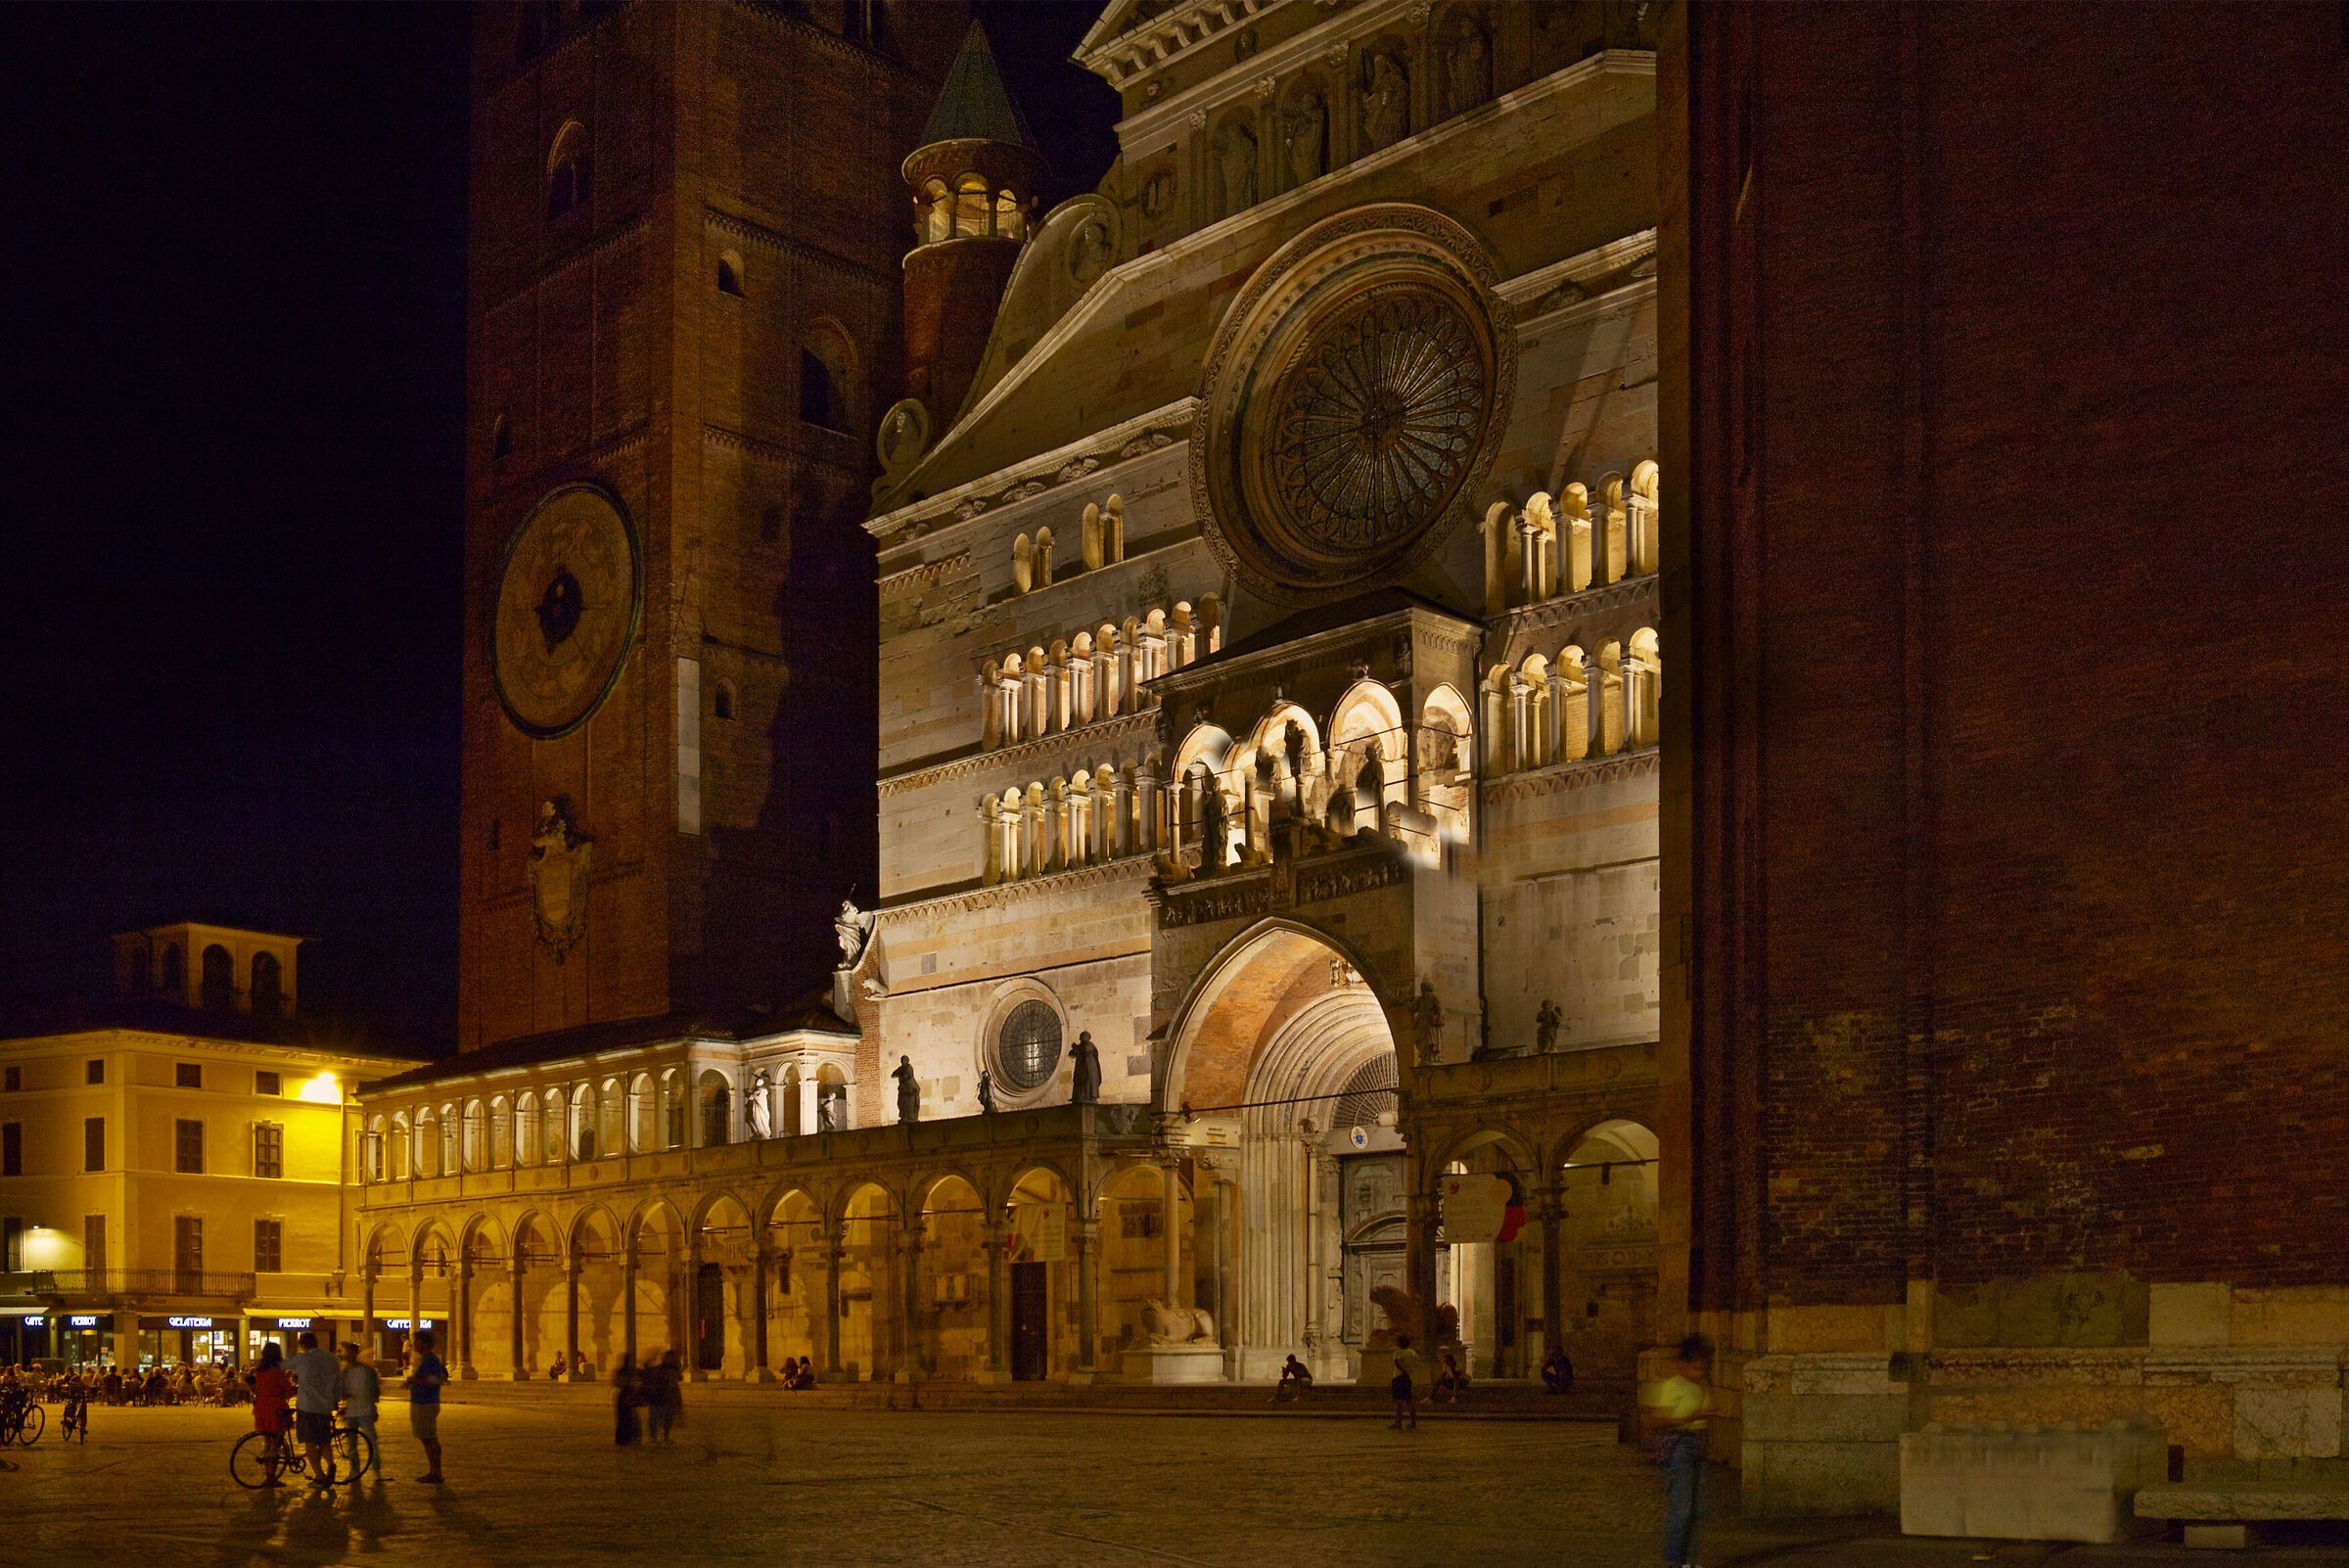 Duomo by night...